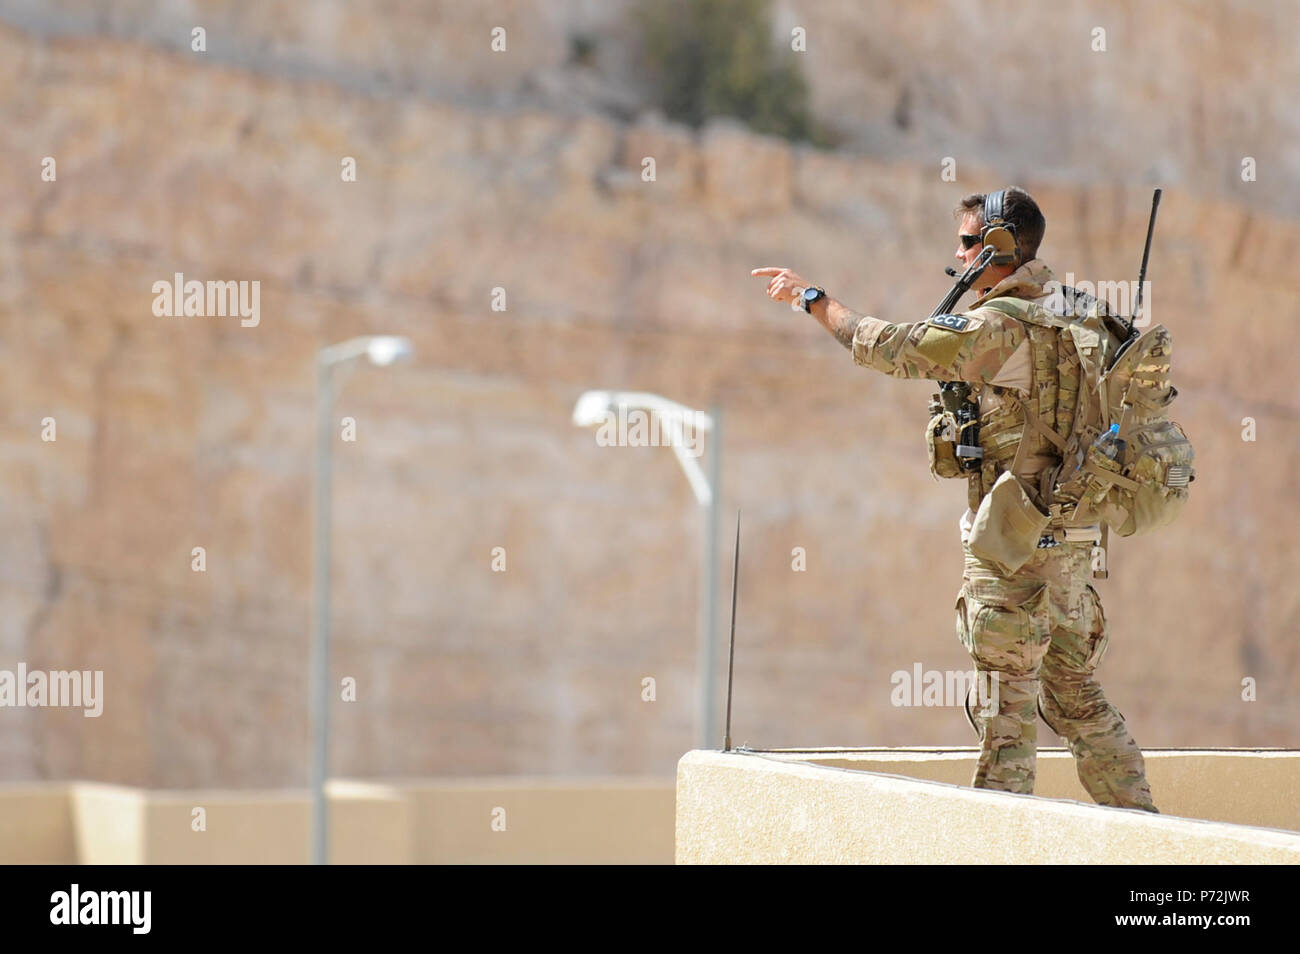 Jordanie (11 mai 2017) Un officier tactique spéciale, affecté à des opérations spéciales de l'Armée de l'air, se prépare à une rapide chute de la corde de l'hélicoptère, au cours d'une recherche et sauvetage de combat d'interopérabilité avec les forces armées jordaniennes de formation Groupe de travail spécial, le Roi Abdallah II au centre de formation d'opérations spéciales, dans le cadre de l'exercice lion avide. Lion avide est un exercice annuel le Commandement central américain en Jordanie visant à renforcer les relations militaires entre les Etats-Unis, la Jordanie et d'autres partenaires internationaux. La nouvelle édition se compose d'environ 7 200 militaires provenant de plus de 2 Banque D'Images